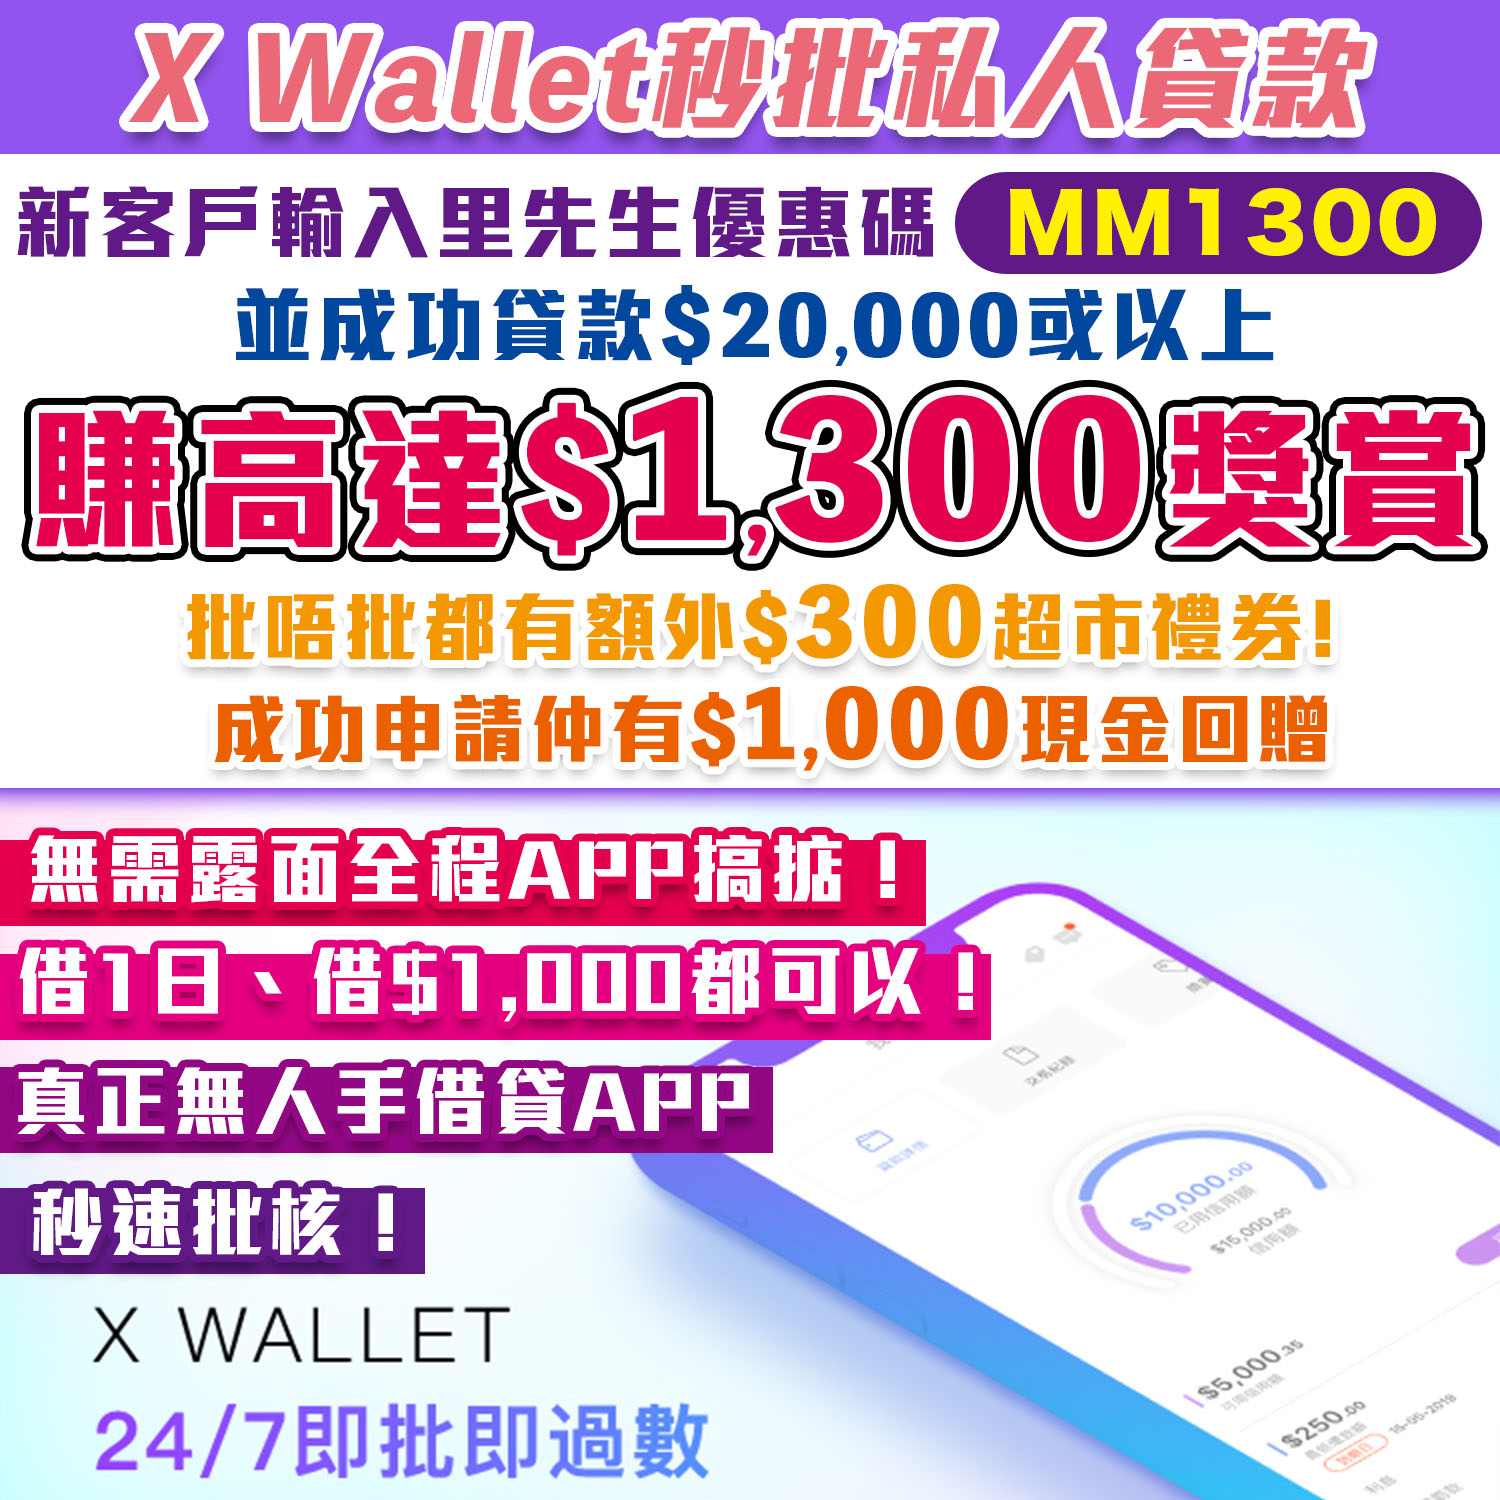 【X Wallet秒批私人貸款】首次申請並輸入里先生優惠碼「MM1300」賺高達$1,300獎賞！